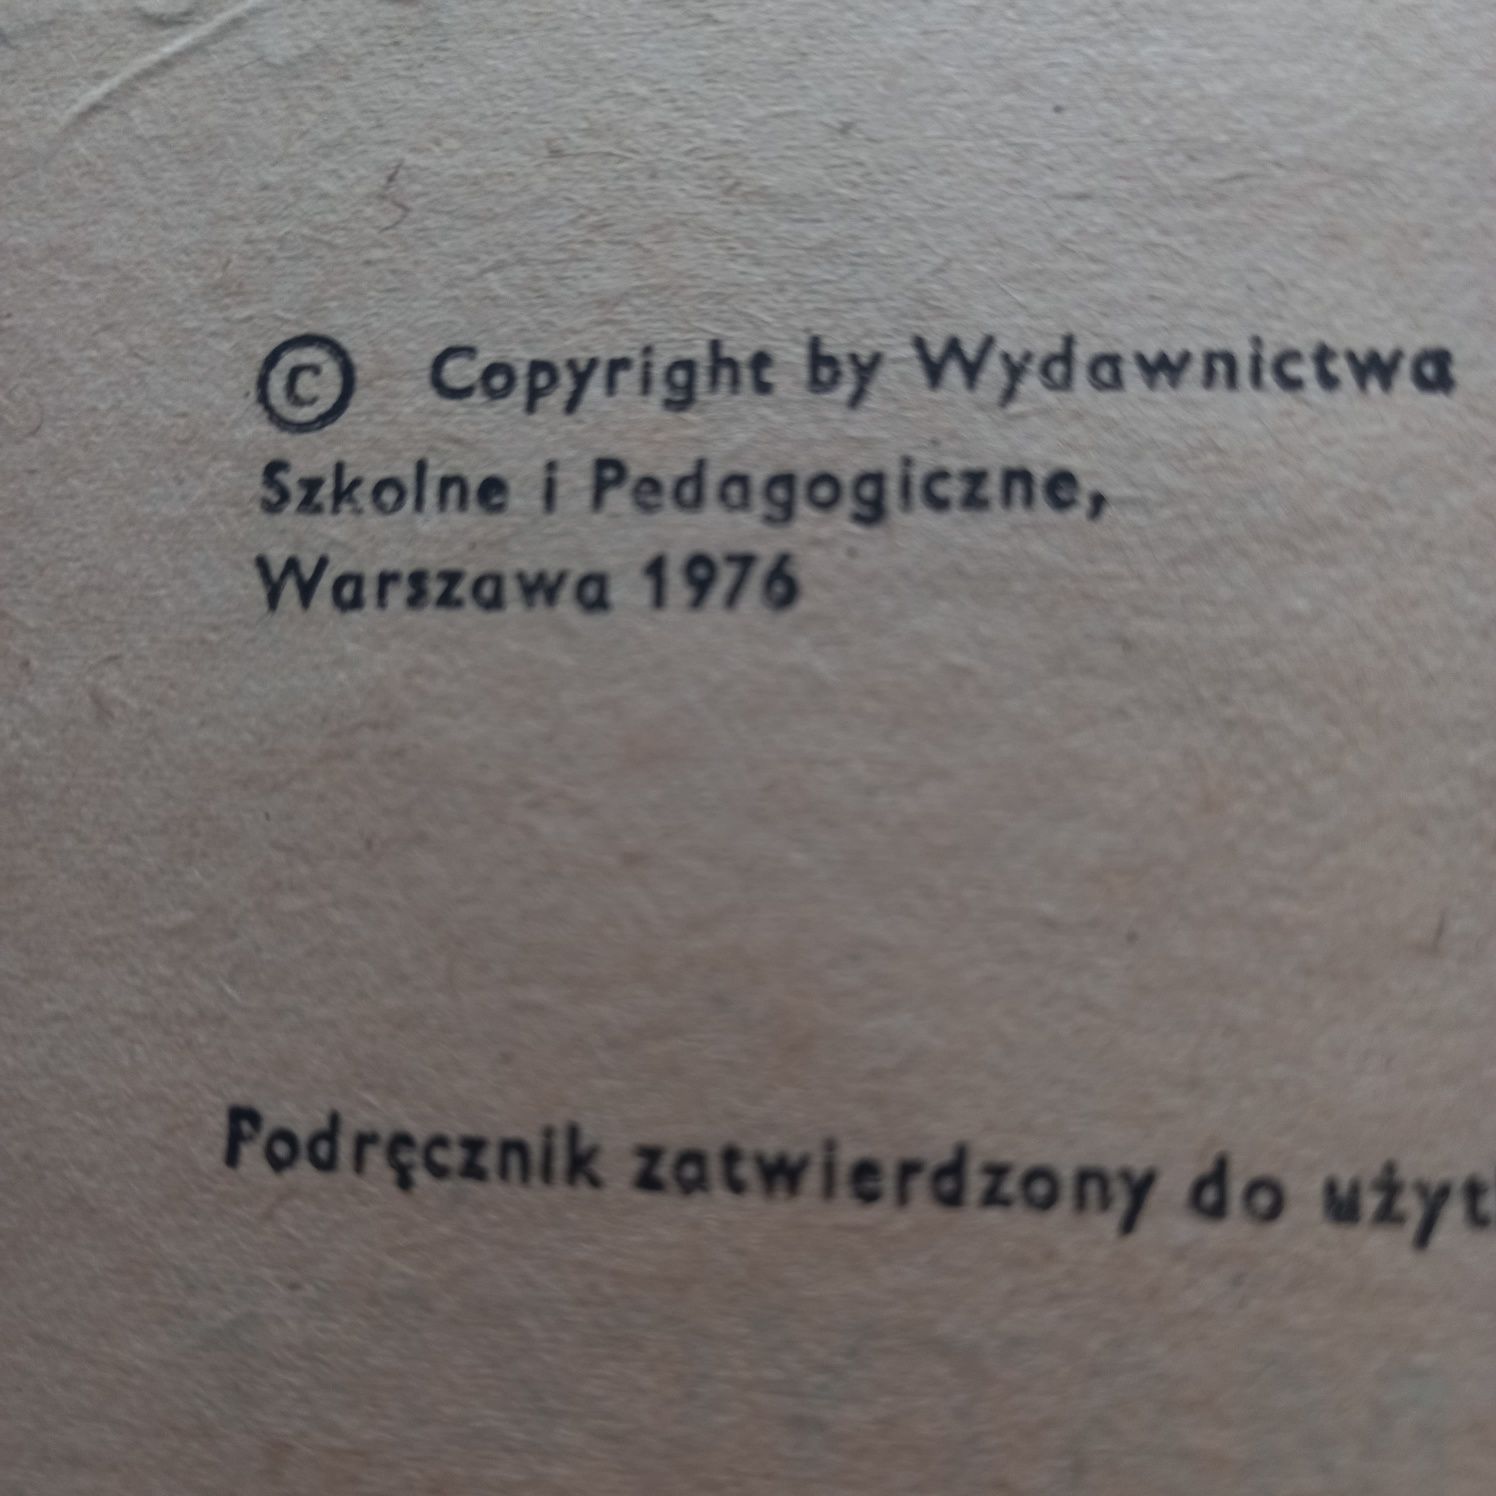 123 Ćwiczenia matematyczne wyd.1981 Zofia Cydzik